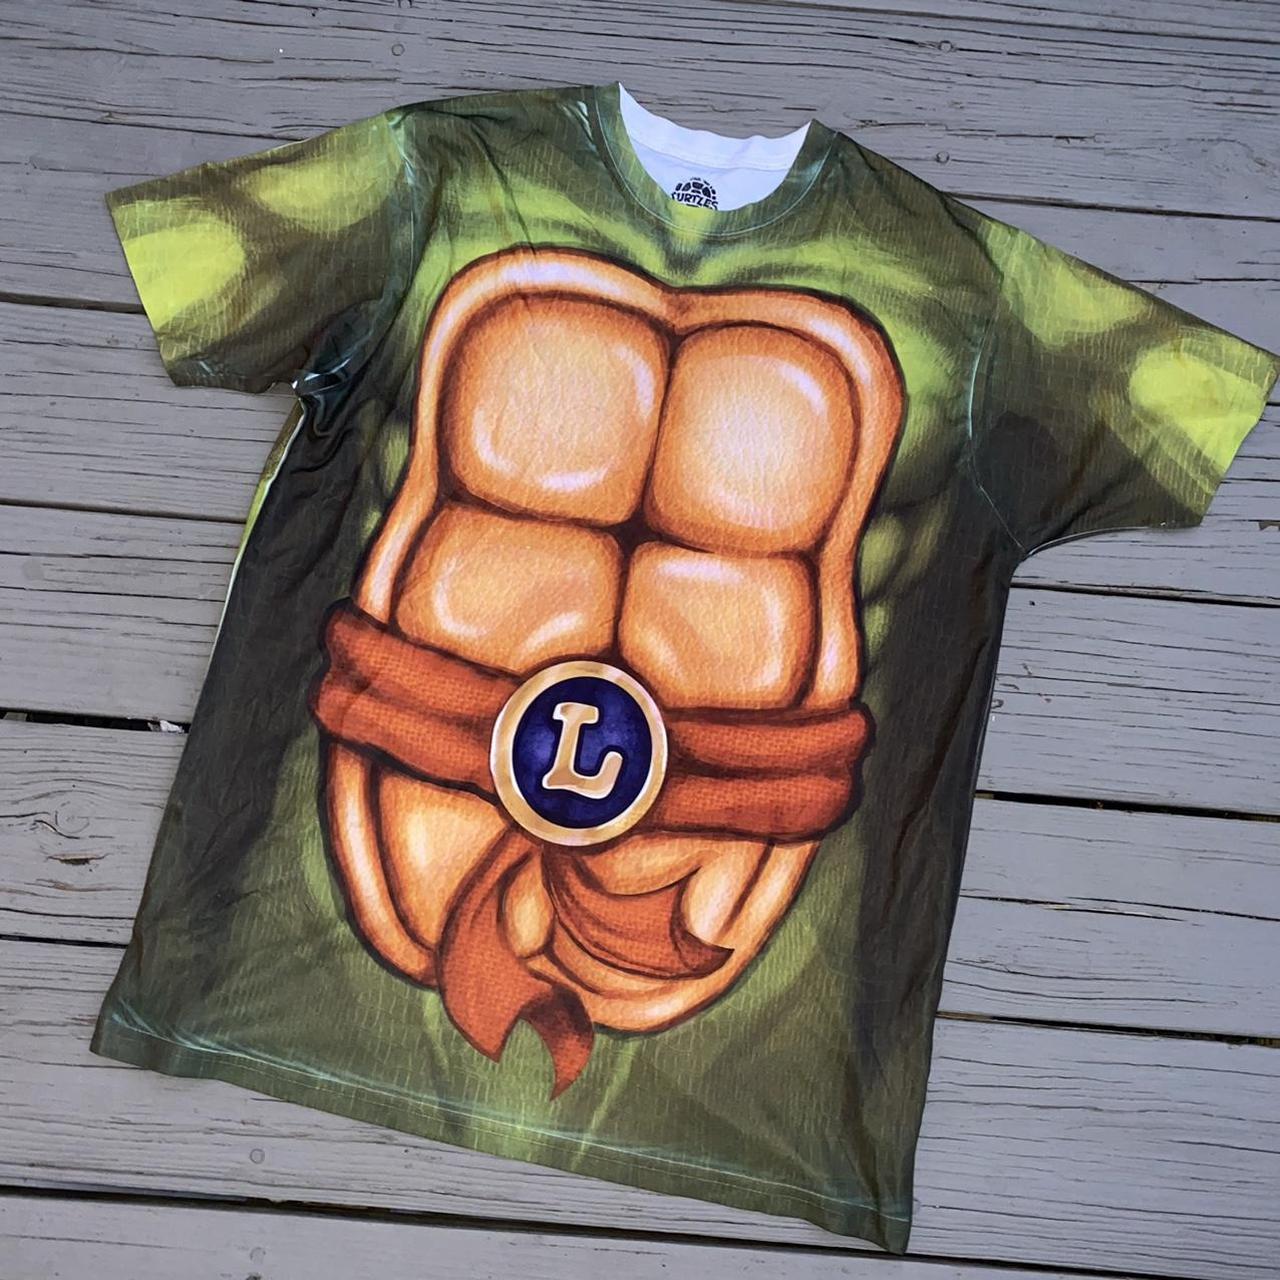 Teenage Mutant Ninja Turtles Teenage mutant ninja turtle characters men's  short sleeve t-shirt